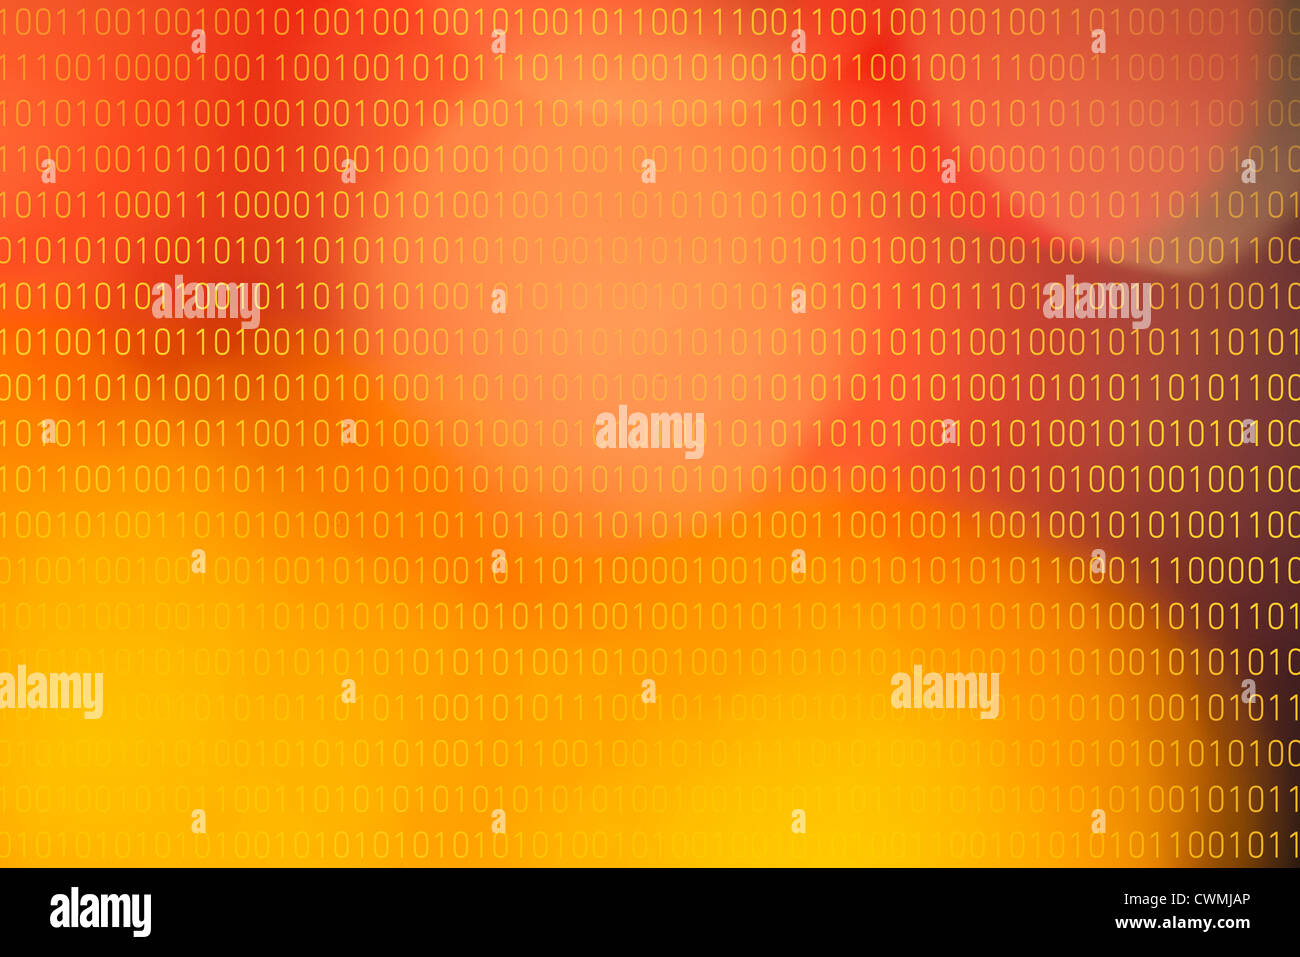 Farbigen Hintergrund für Binär-code Stockfoto